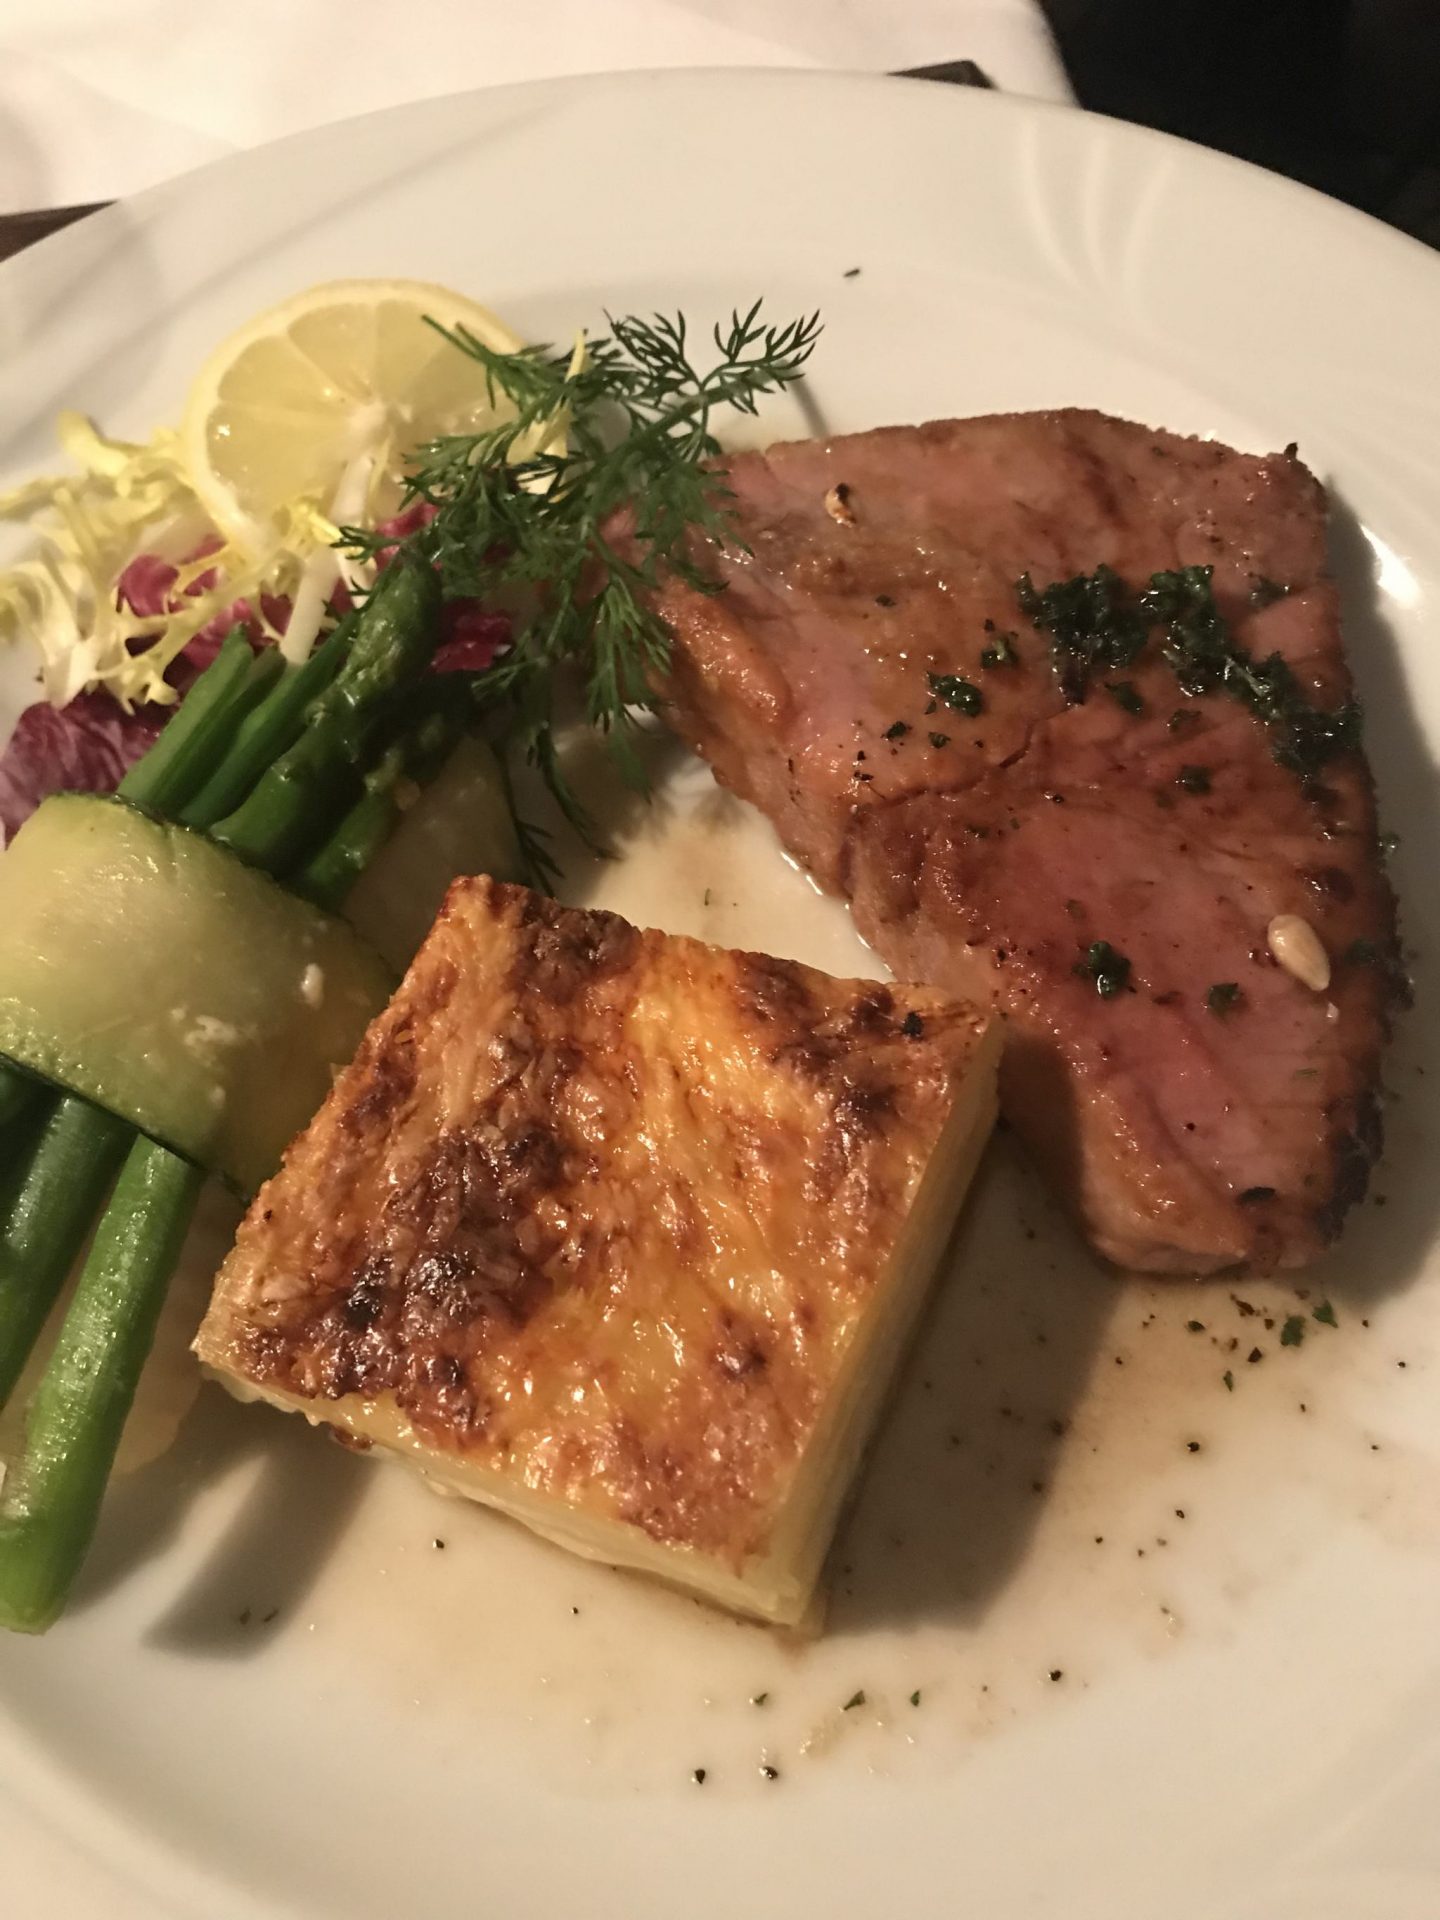 Tunfisch Knoblauch Schlemmer-Menü Elsässer Stube Herne Foodblog Sternestulle